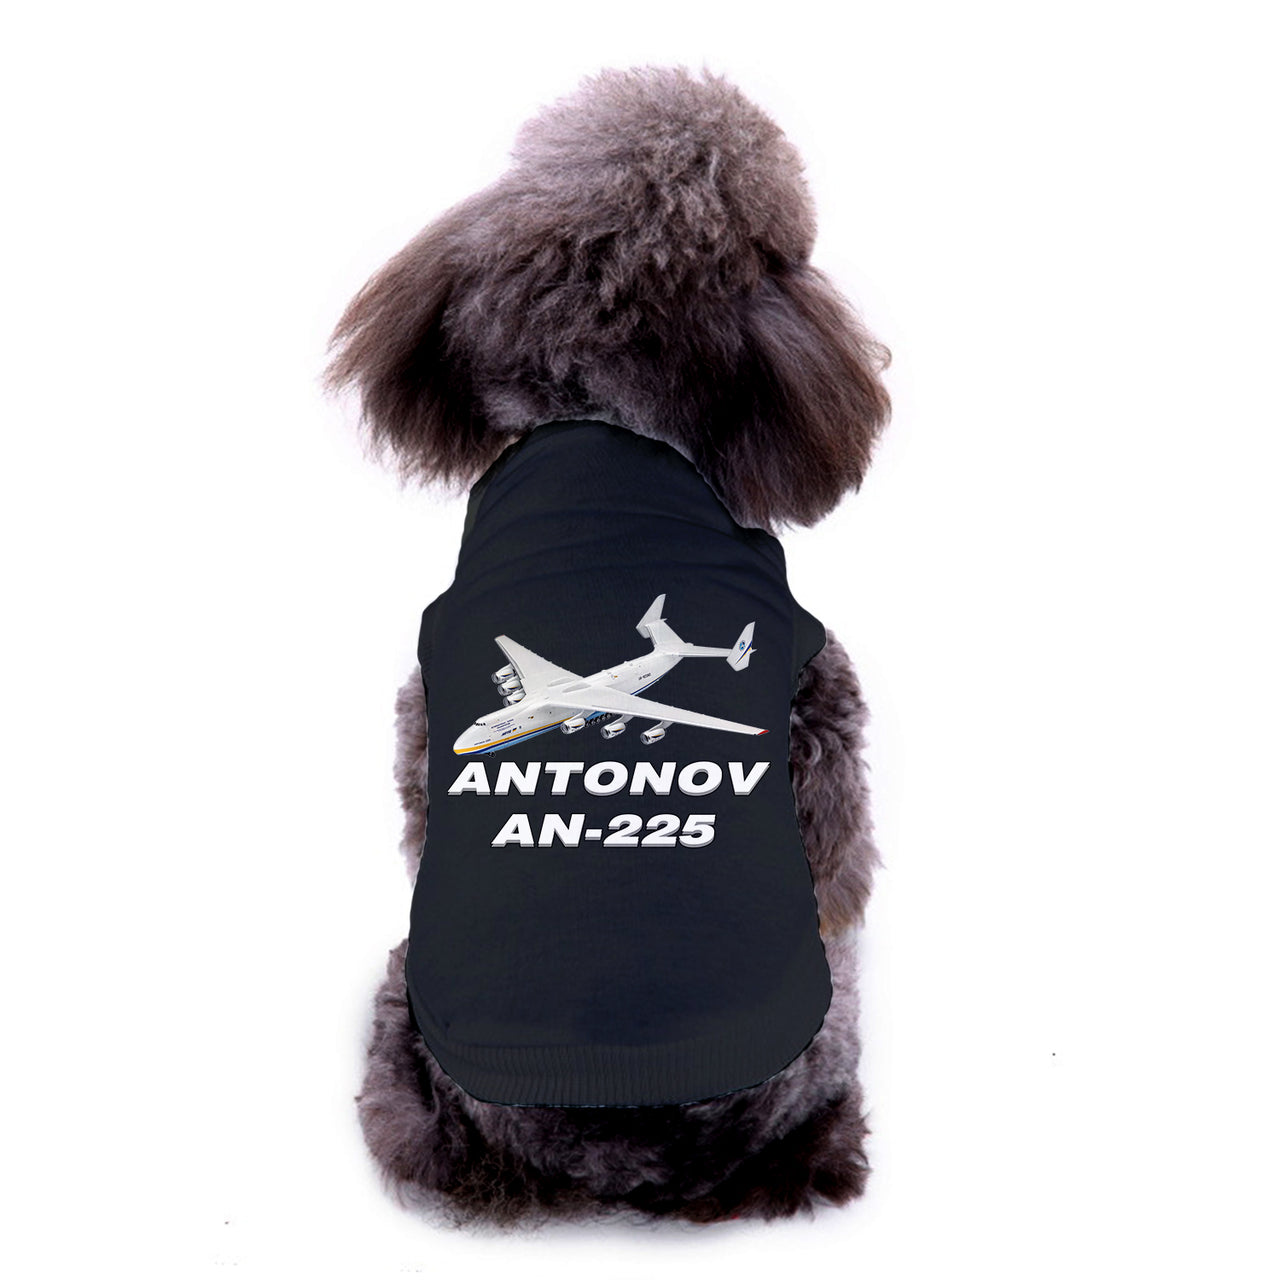 Antonov AN-225 (12) Designed Dog Pet Vests